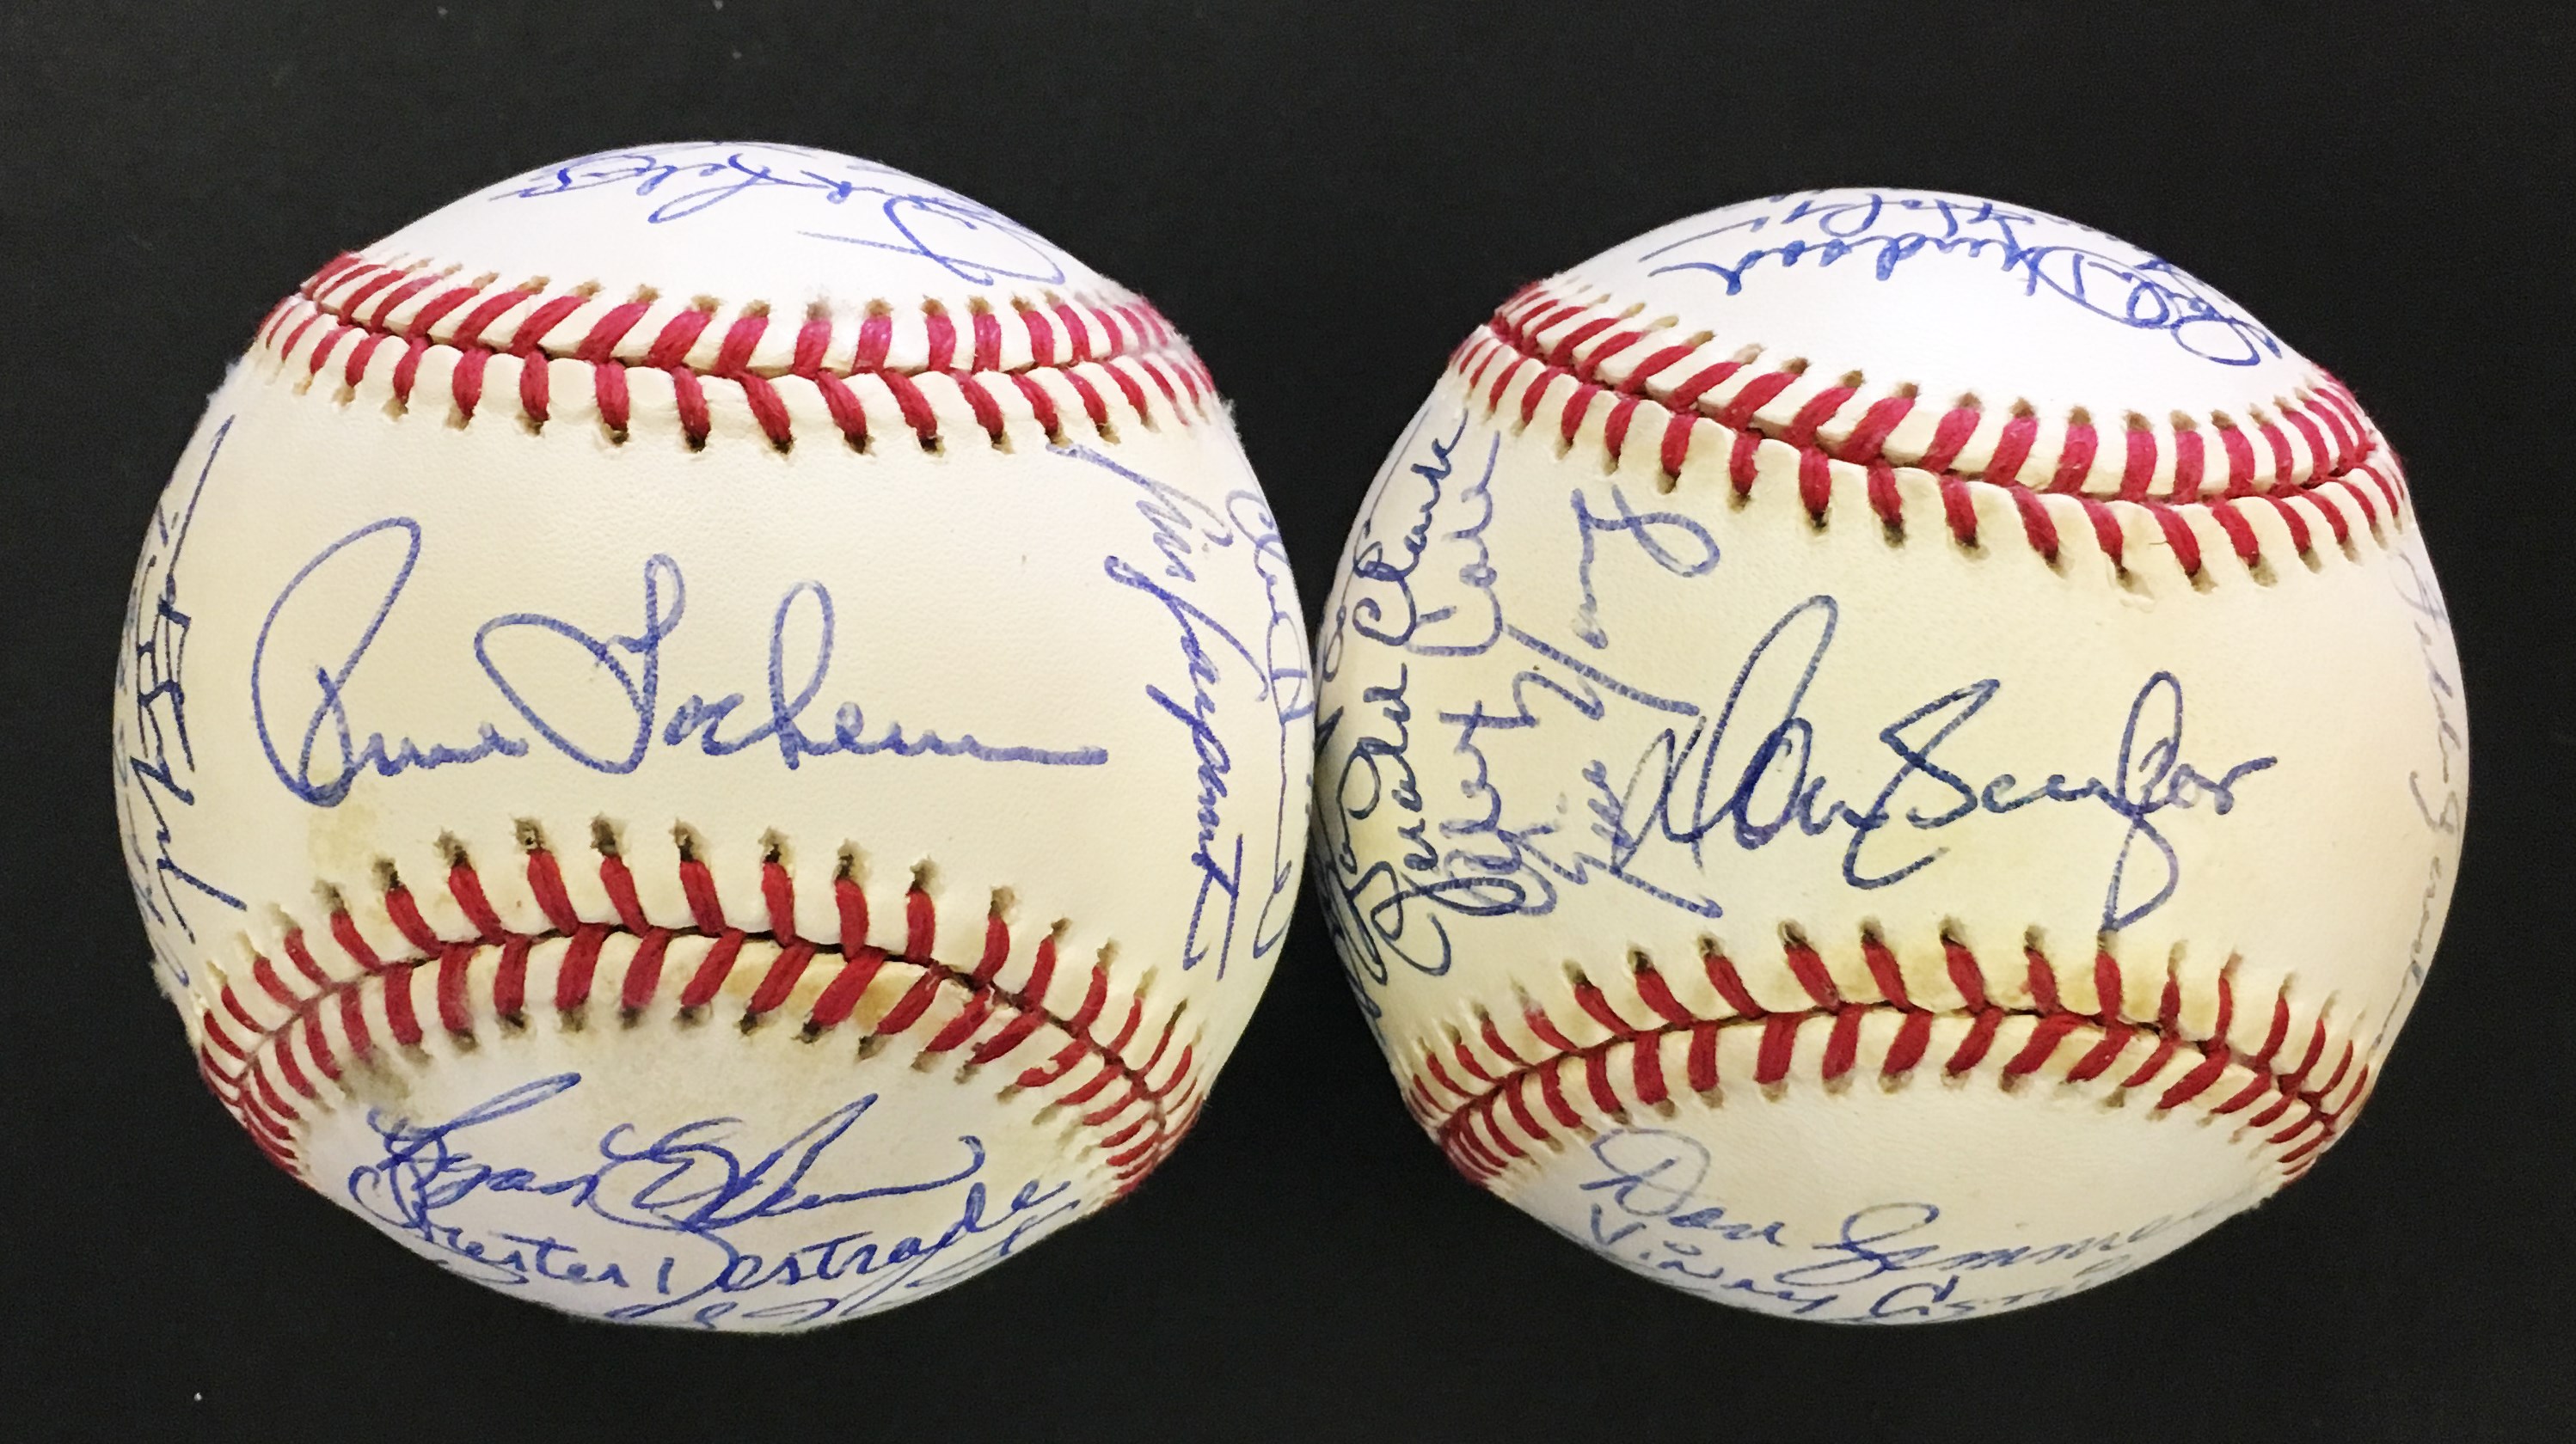 Baseball Autographs - 1993 Colorado Rockies & Florida Marlins Inaugural Season Team Signed Baseballs